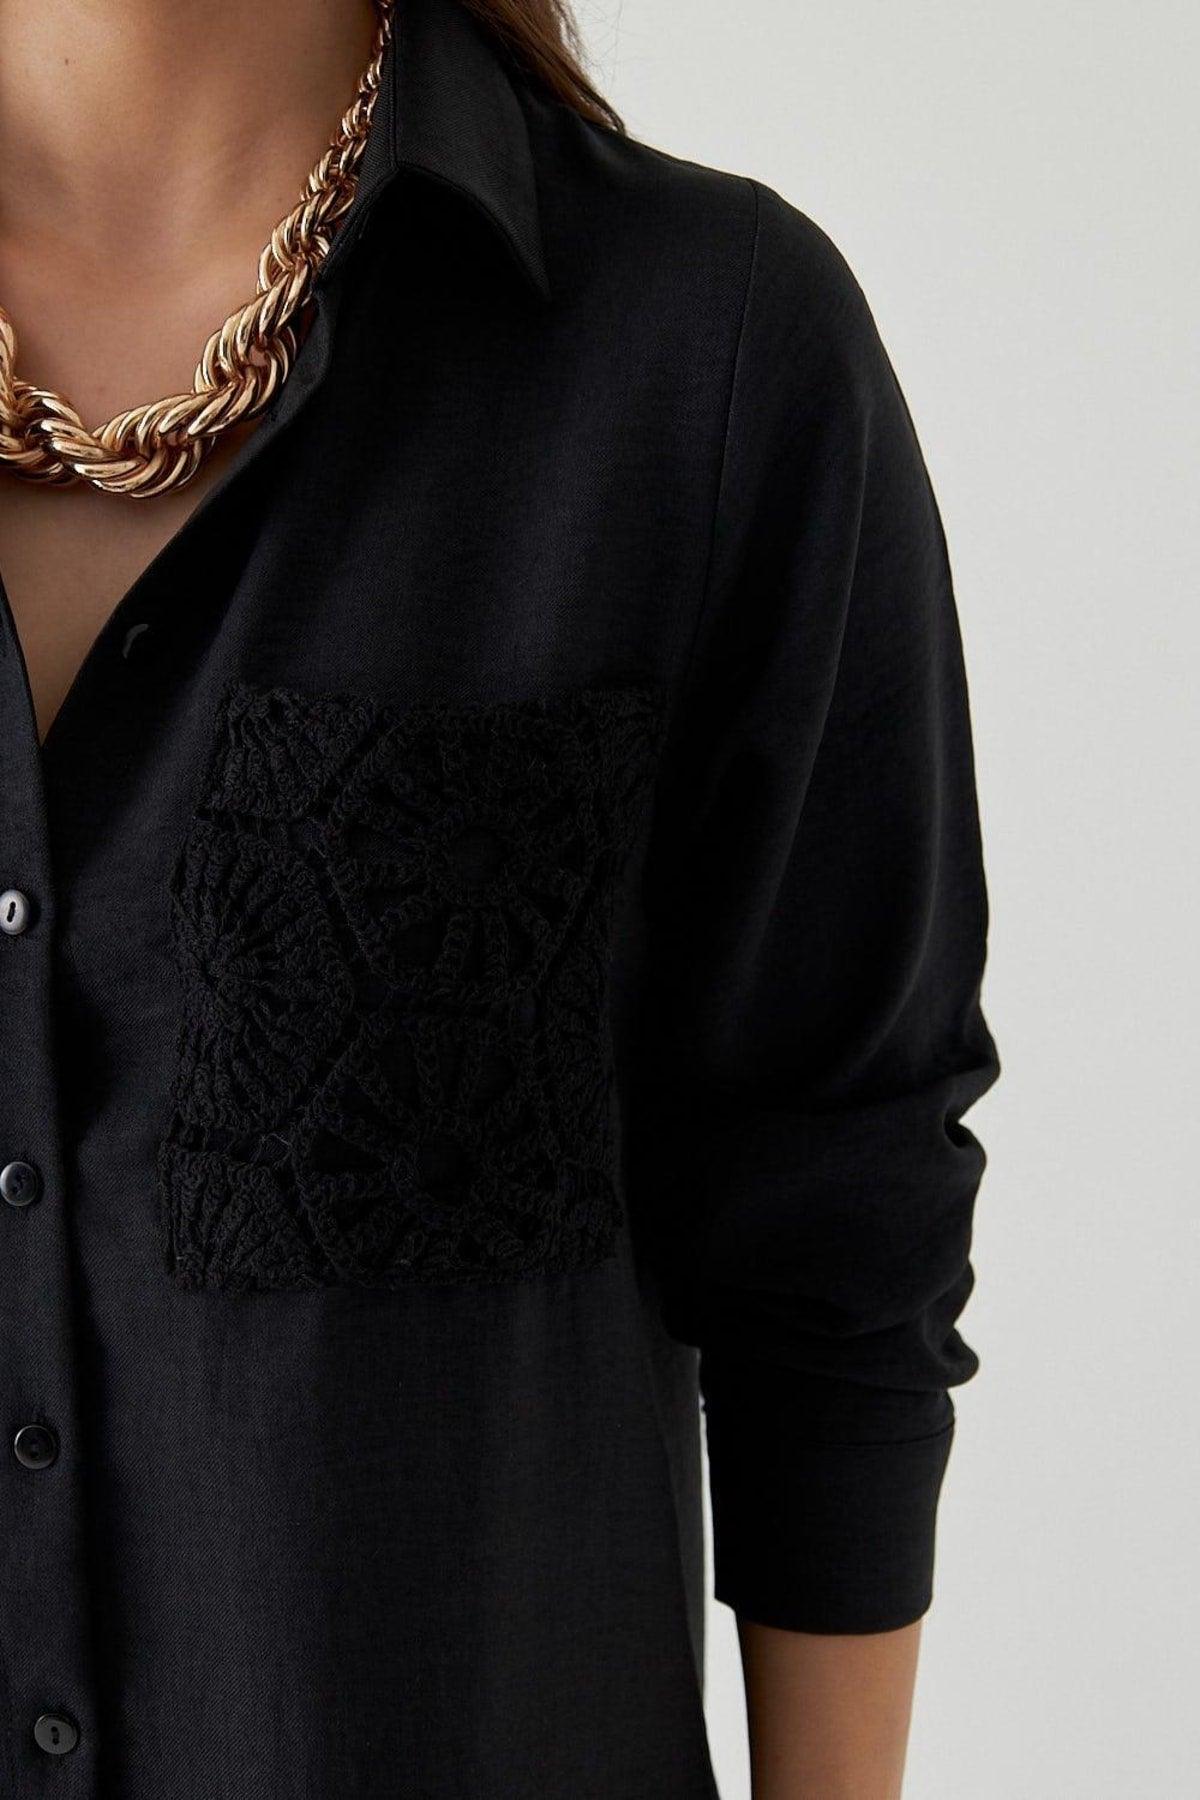 Crochet Detailed Long Sleeve Black Women's Shirt - Swordslife